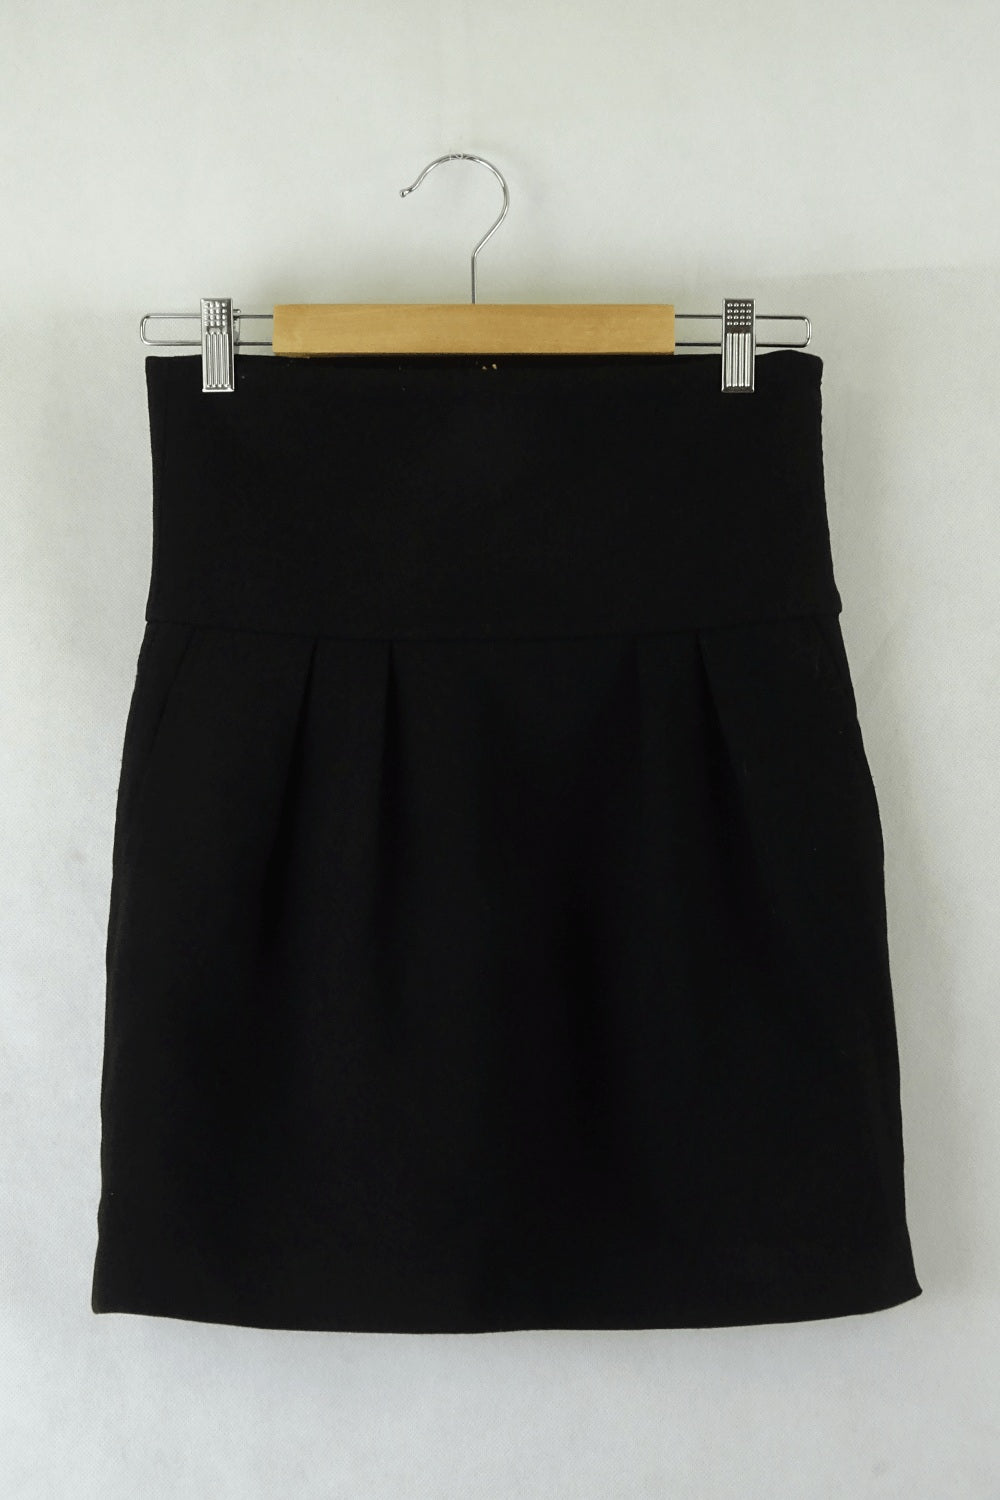 Zara Black Skirt M